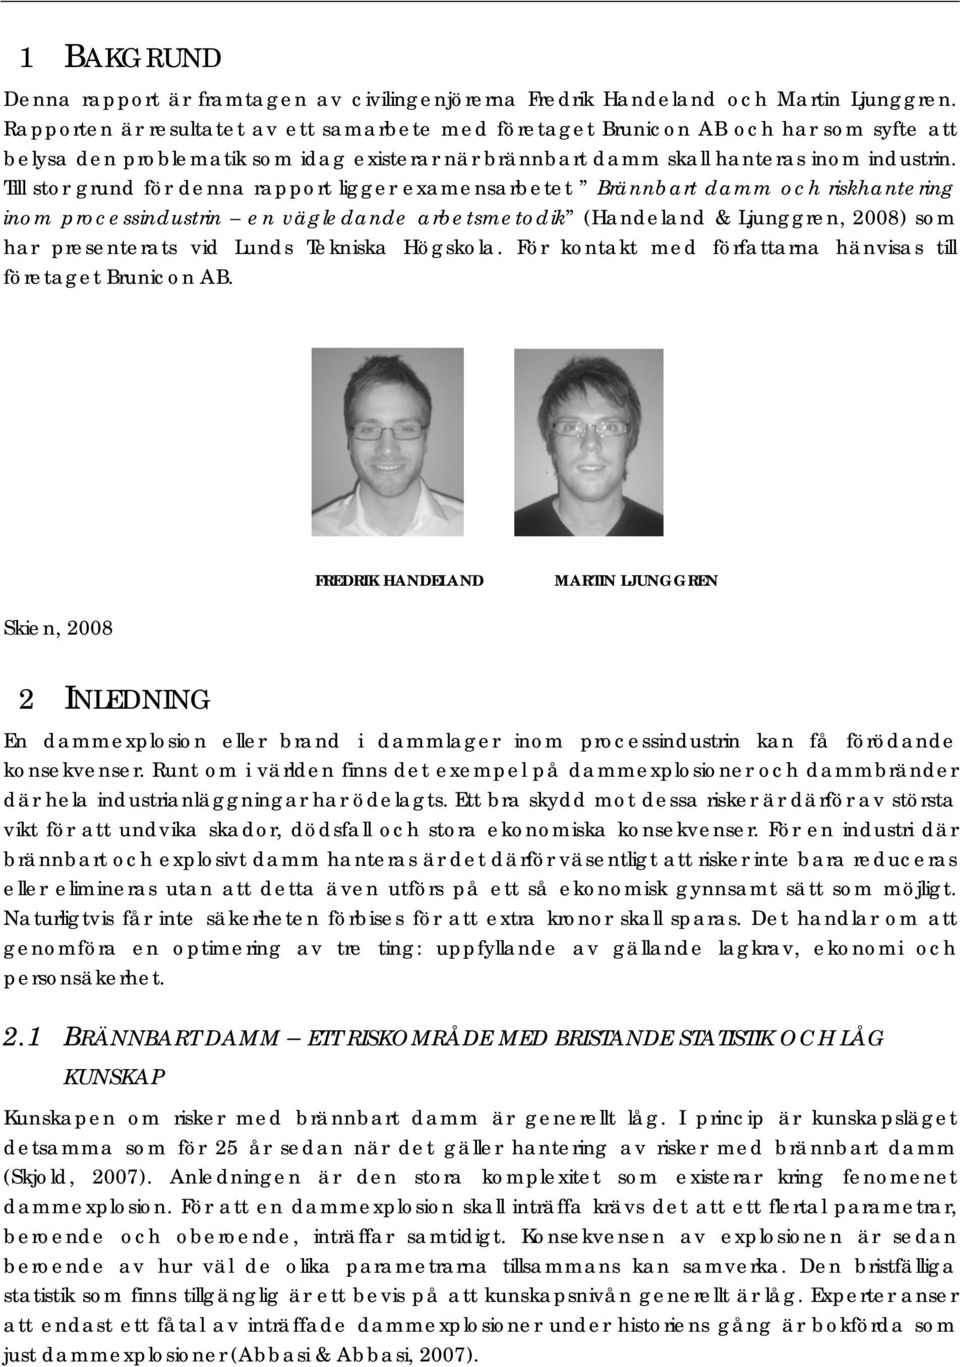 Till stor grund för denna rapport ligger examensarbetet Brännbart damm och riskhantering inom processindustrin en vägledande arbetsmetodik (Handeland & Ljunggren, 2008) som har presenterats vid Lunds